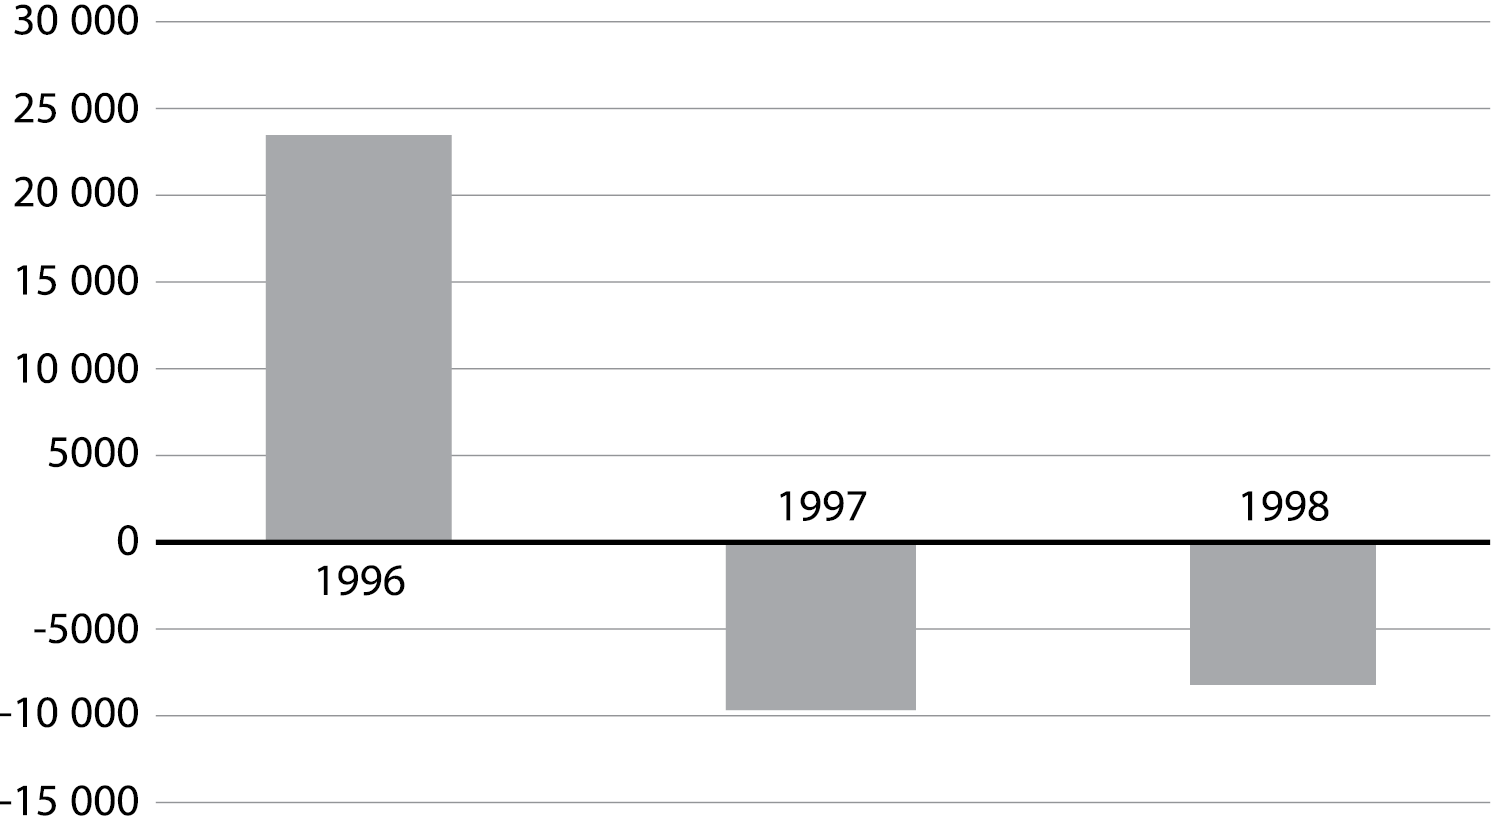 Баланс притока/оттока капитала России 1996 - 1998 г.г.